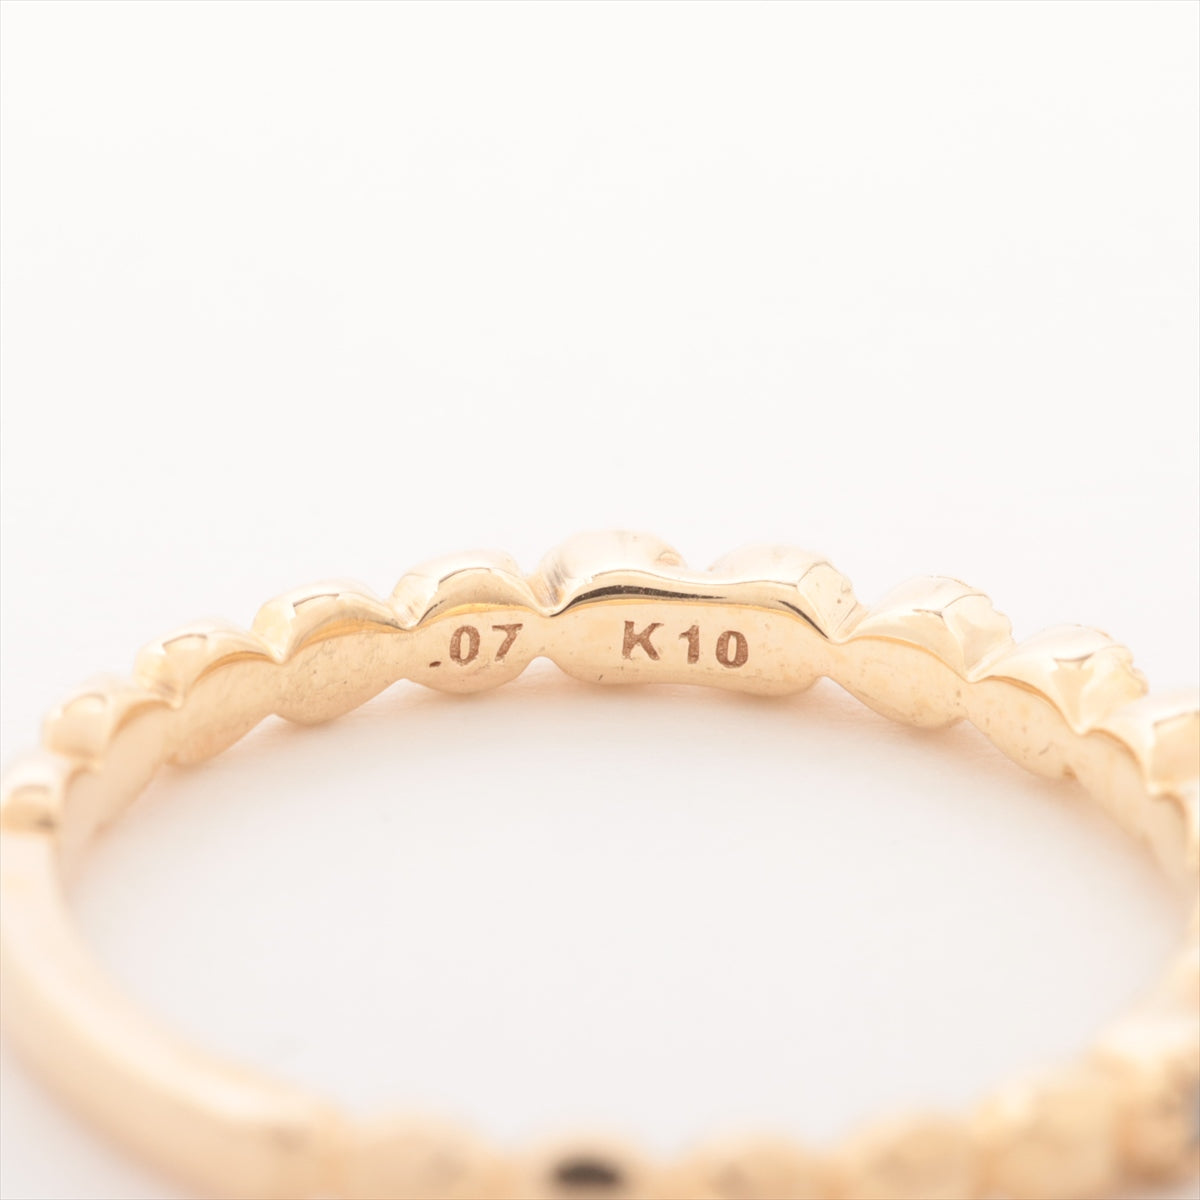 Agat Diamond Ring K10 (YG) 0.9g 0.07 E